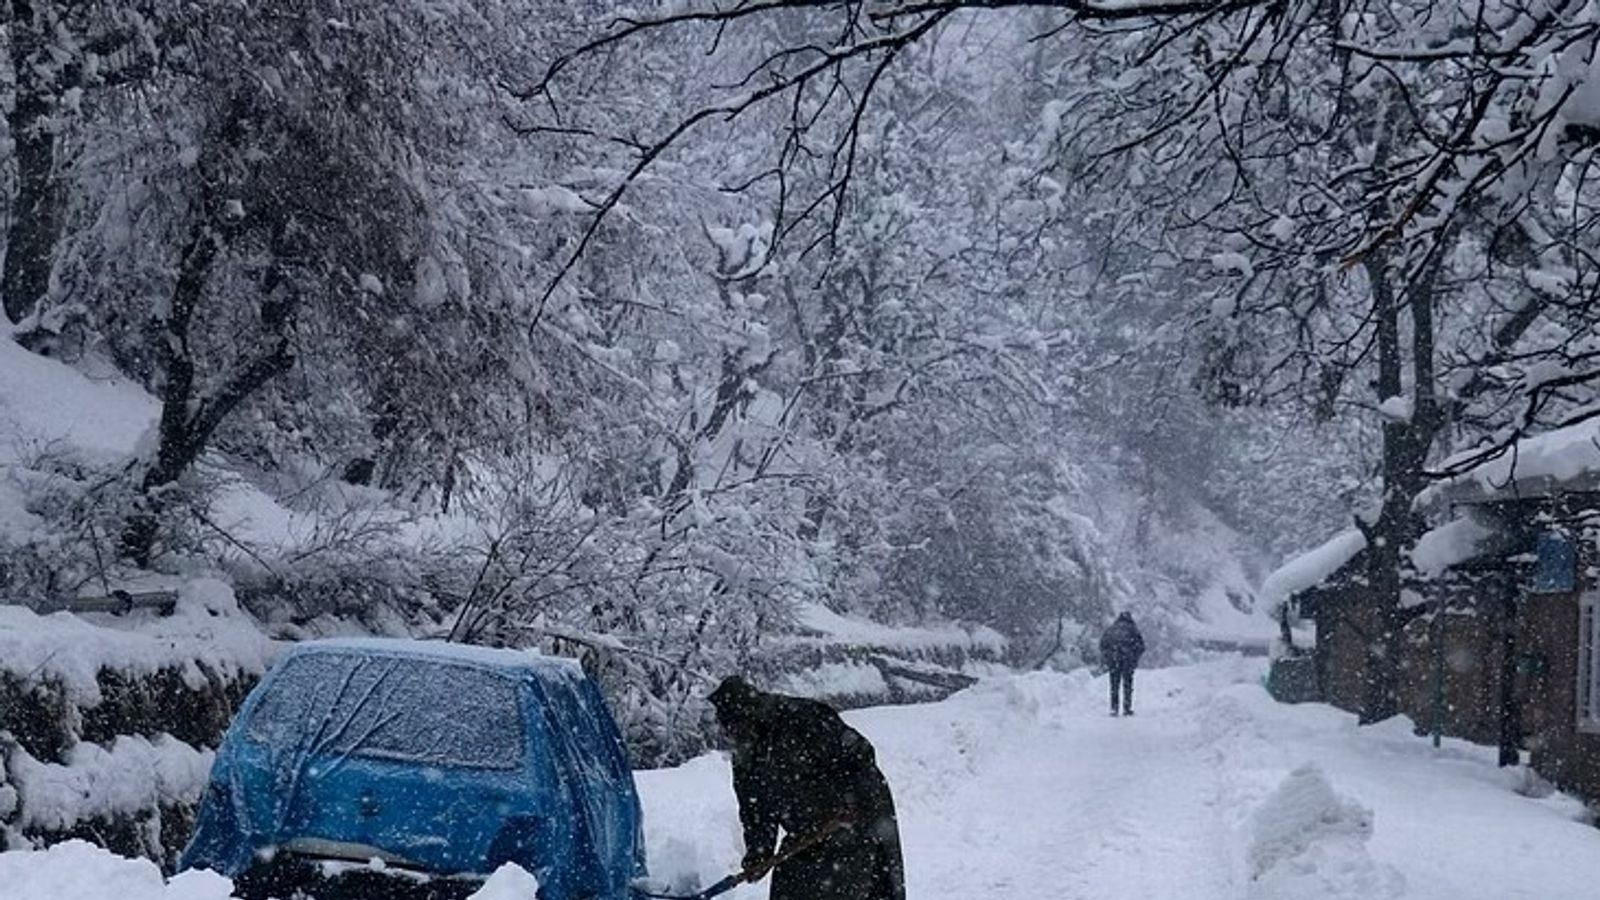  कश्मीर-हिमाचल में बर्फबारी:दिल्ली में 10.6 डिग्री पारा, सामान्य से 3 डिग्री ज्यादा,कश्मीर में 30 जनवरी तक चलेगा बर्फबारी का दौर